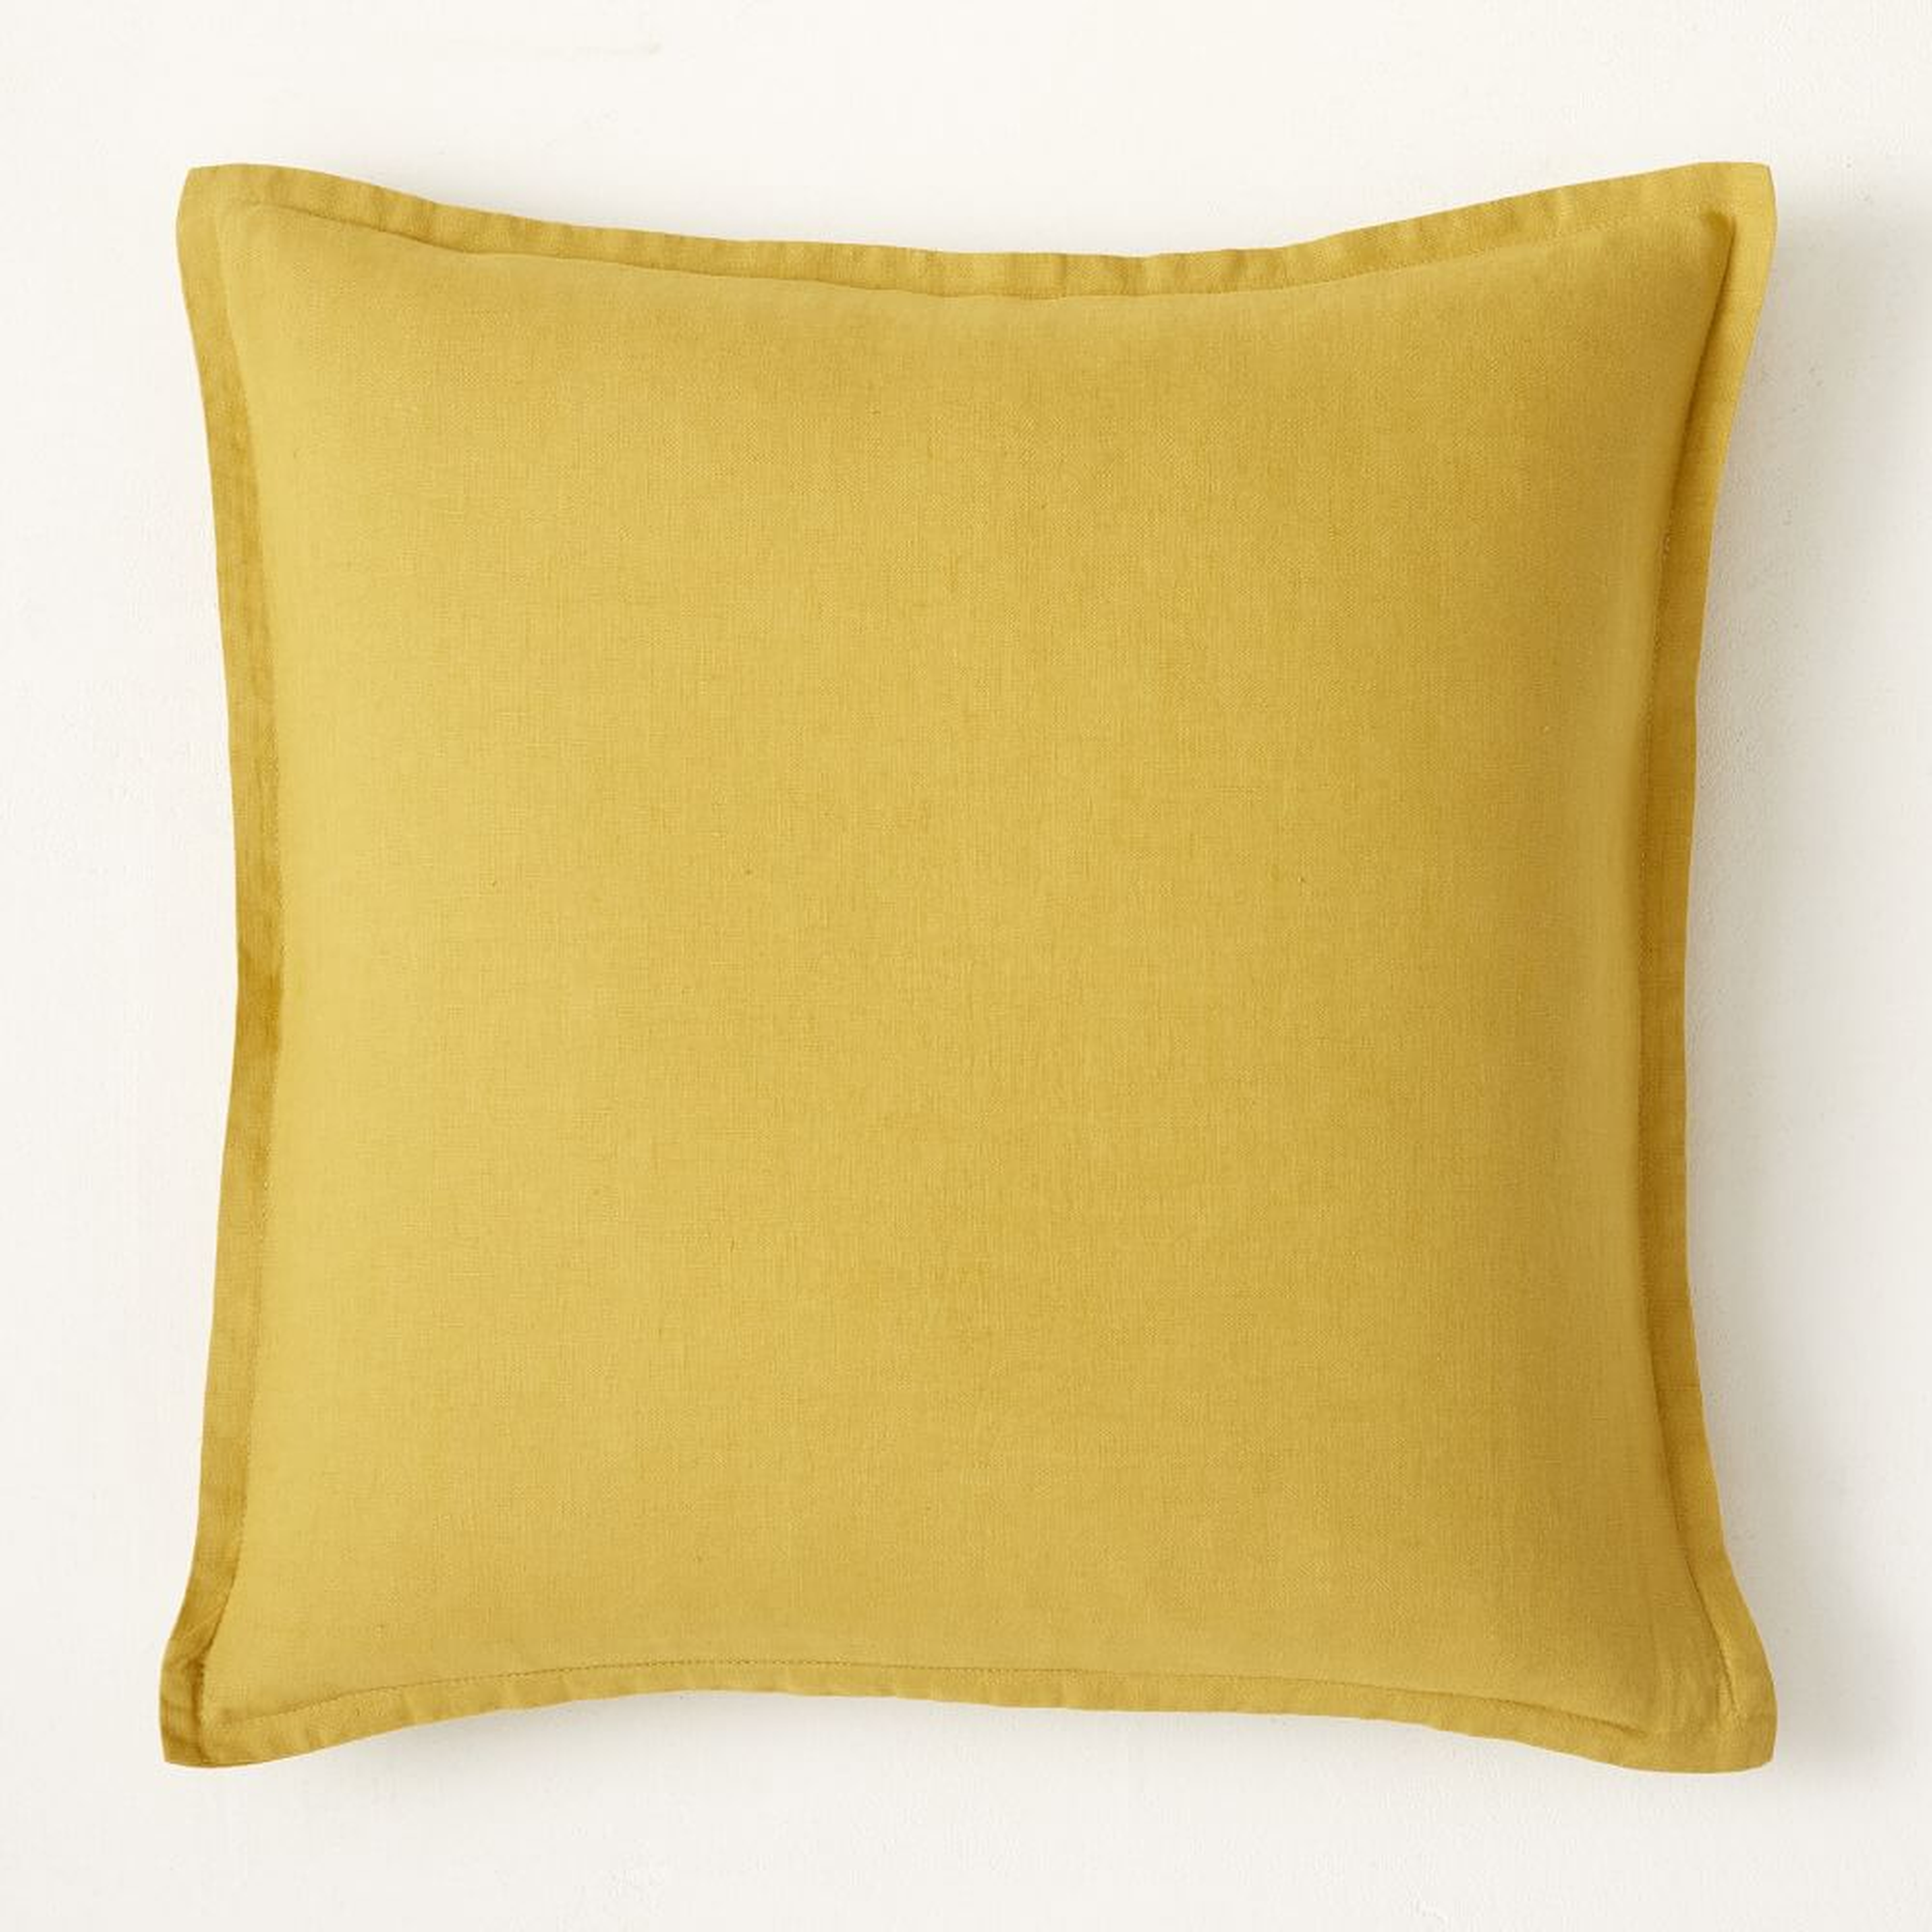 European Flax Linen Pillow Cover, 18"x18", Dijon - West Elm